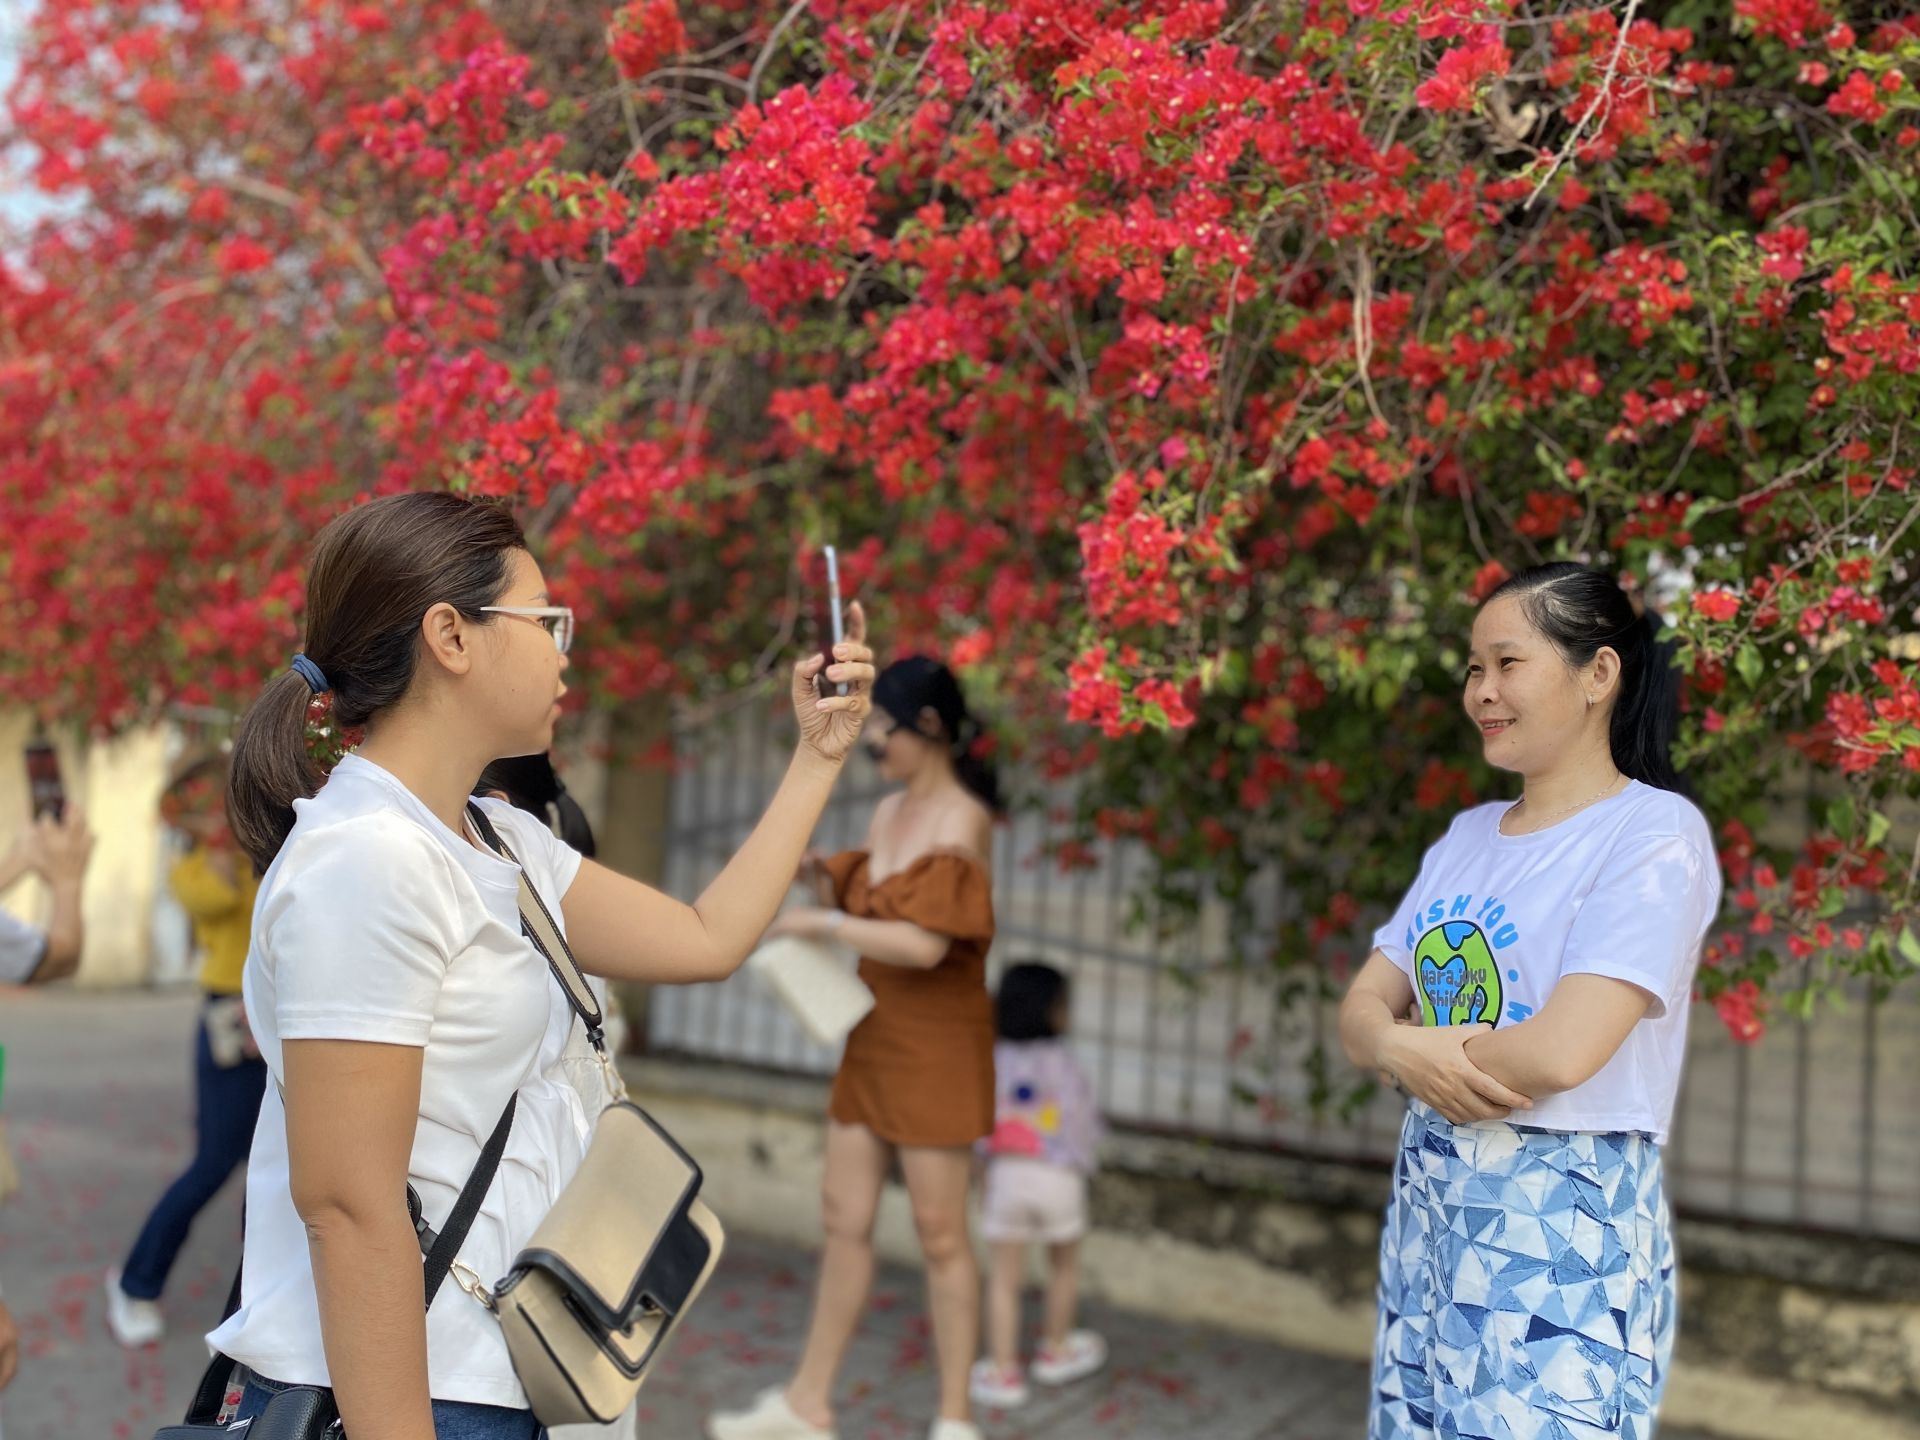 Một giàn hoa giấy tuôn bông đỏ không kịp cản đang xôn xao ở Tây Ninh, nhiều người đến chụp ảnh, ngắm say mê - Ảnh 9.